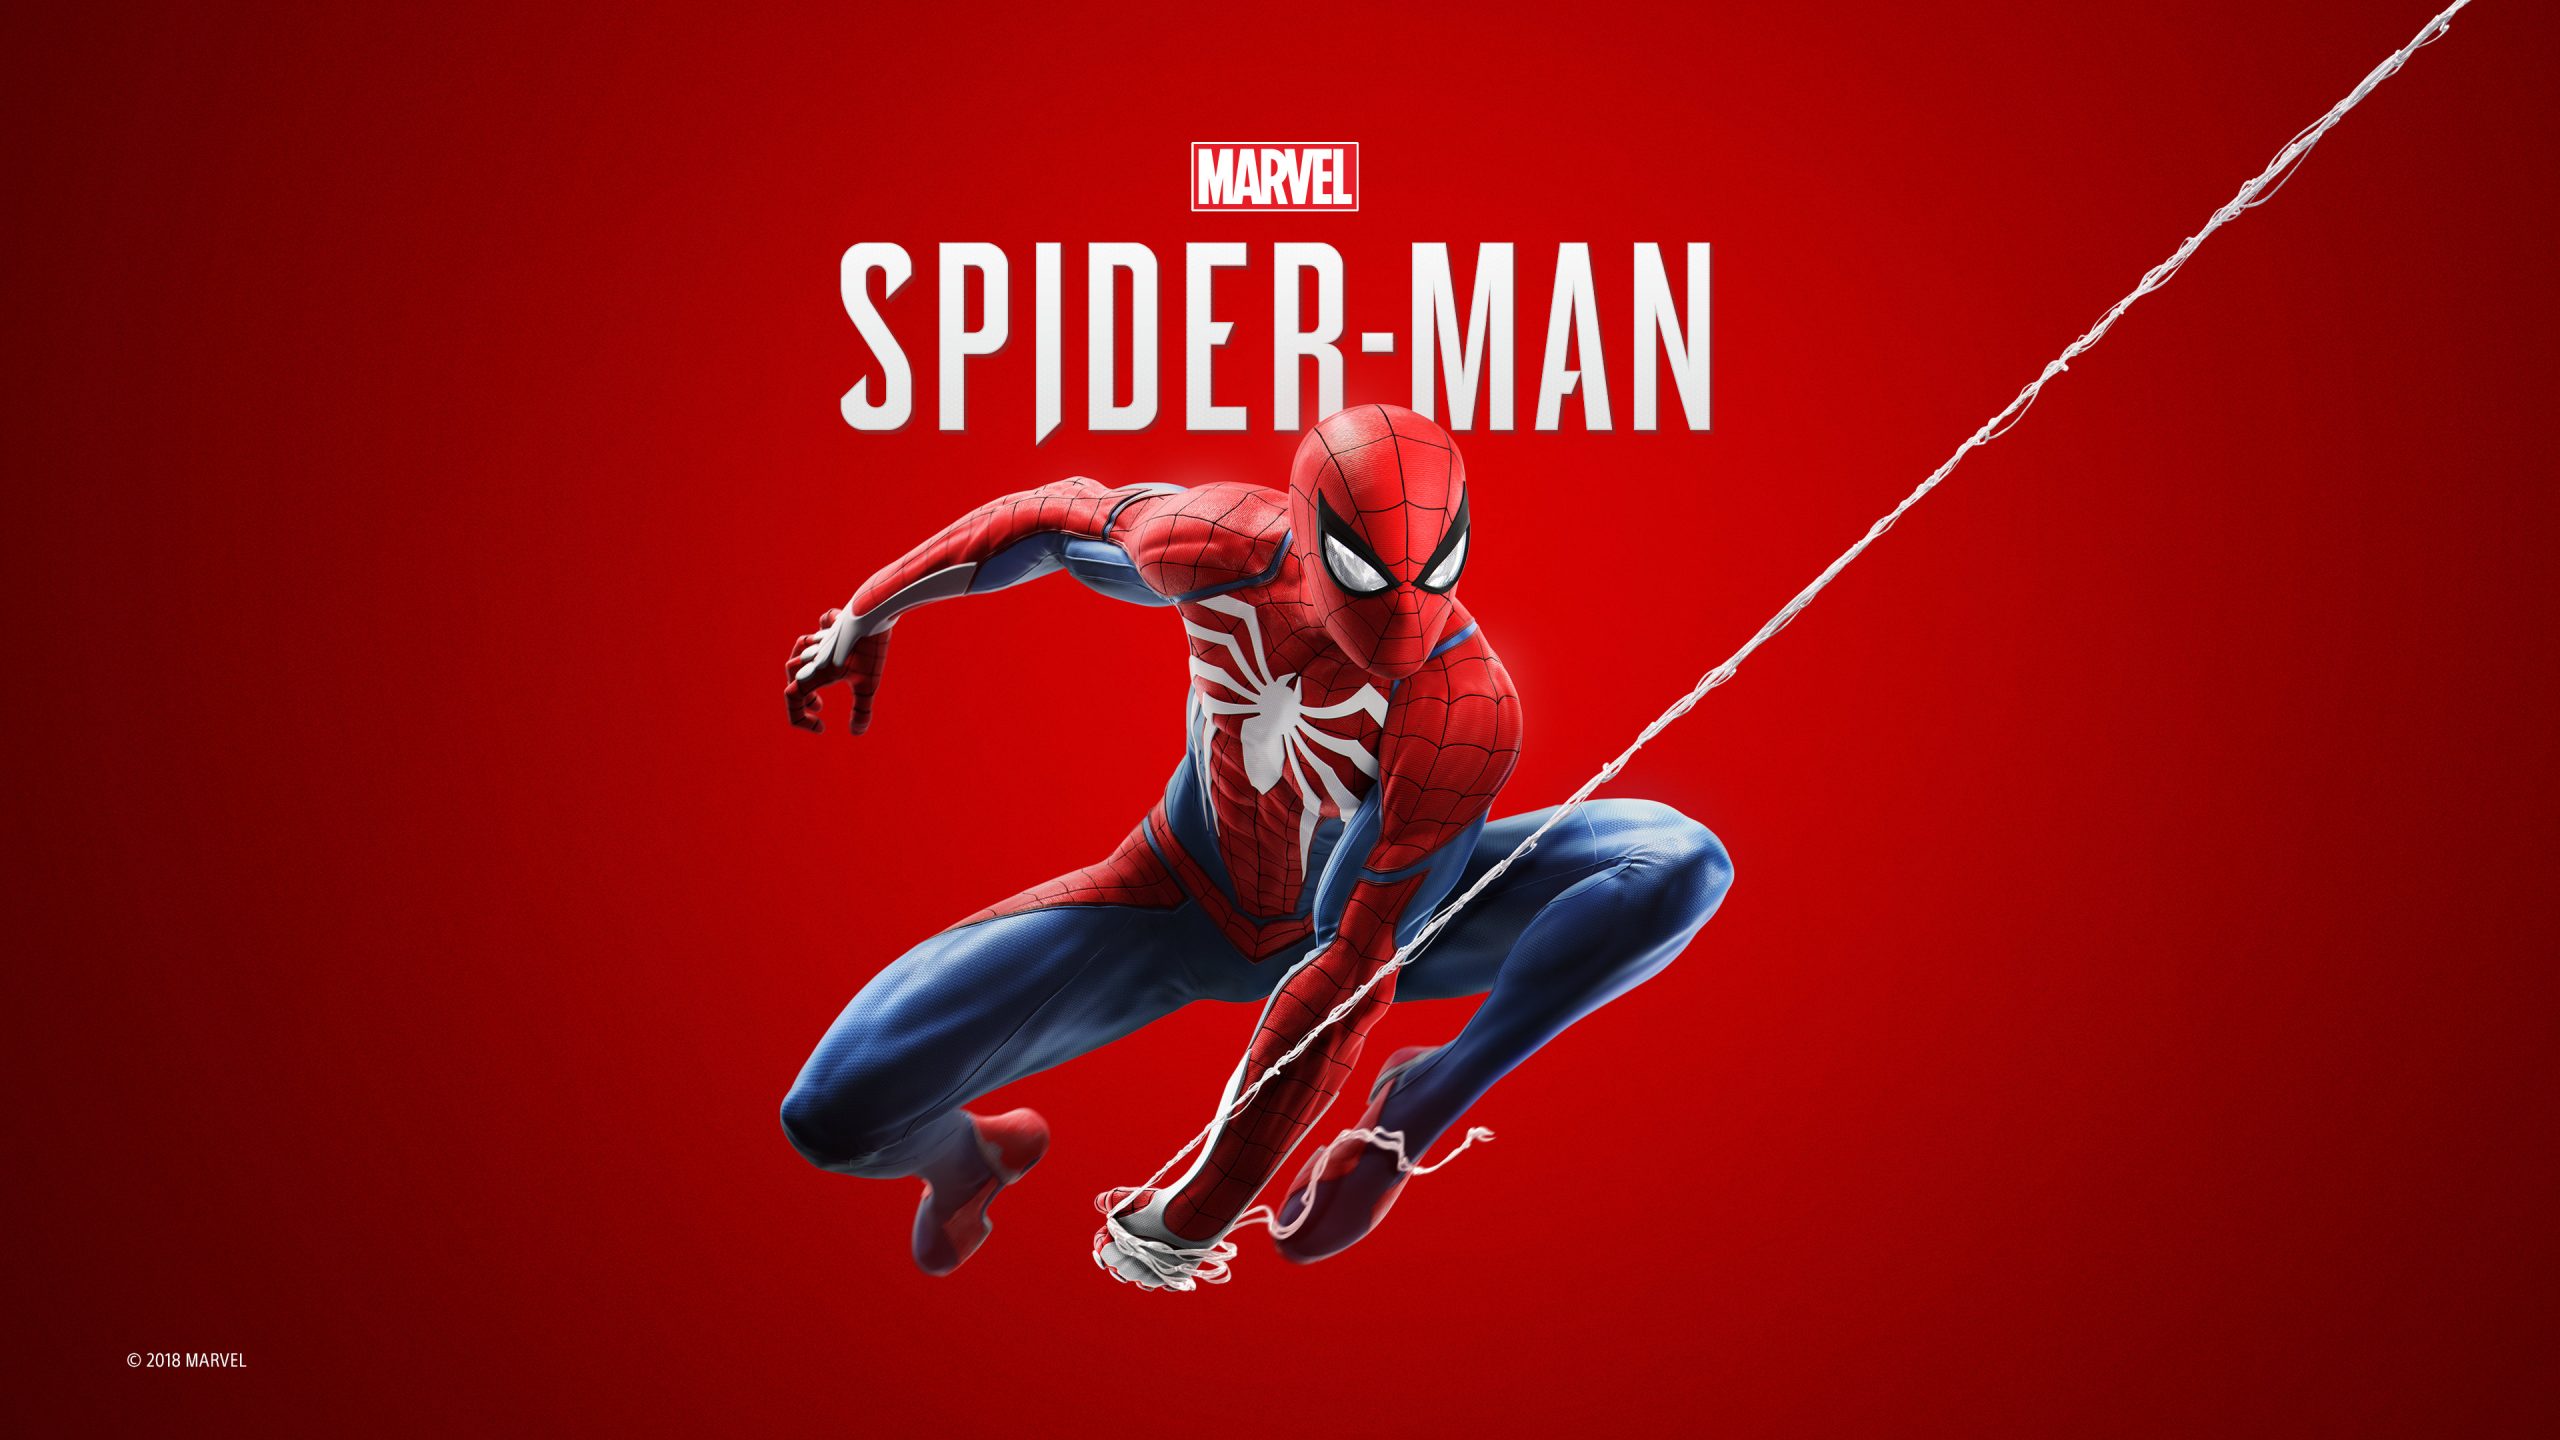 Nola deskargatu doan Spider-Man gaia PS4rako?
